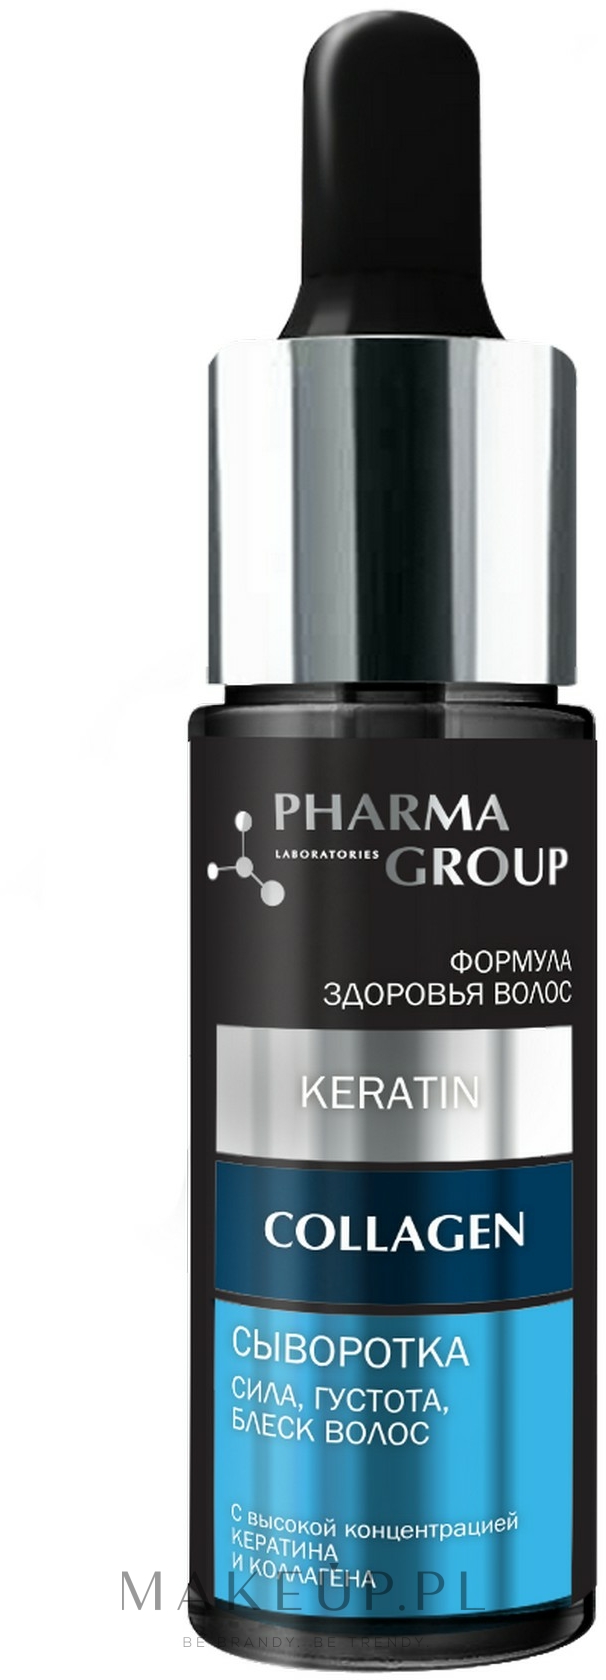 Wzmacniające serum nabłyszczające do włosów Keratyna i kolagen - Pharma Group Laboratories — Zdjęcie 14 ml